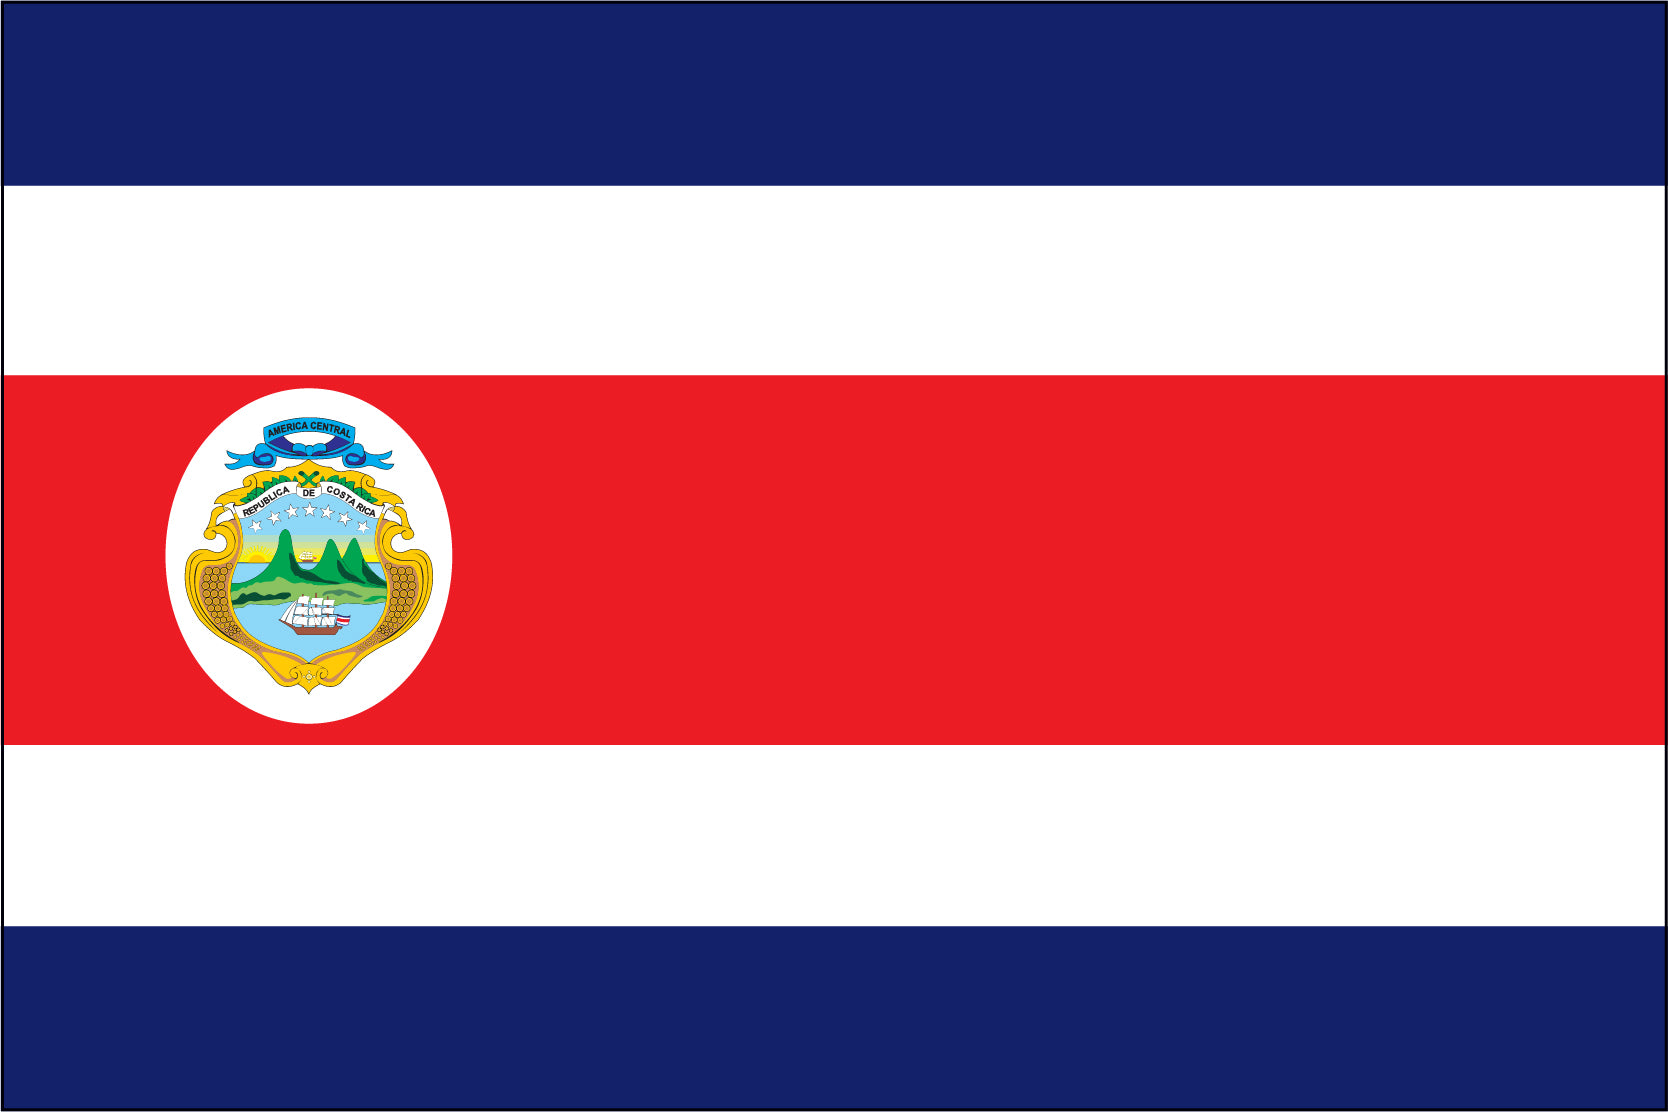 Costa Rica (Governmental Seal)